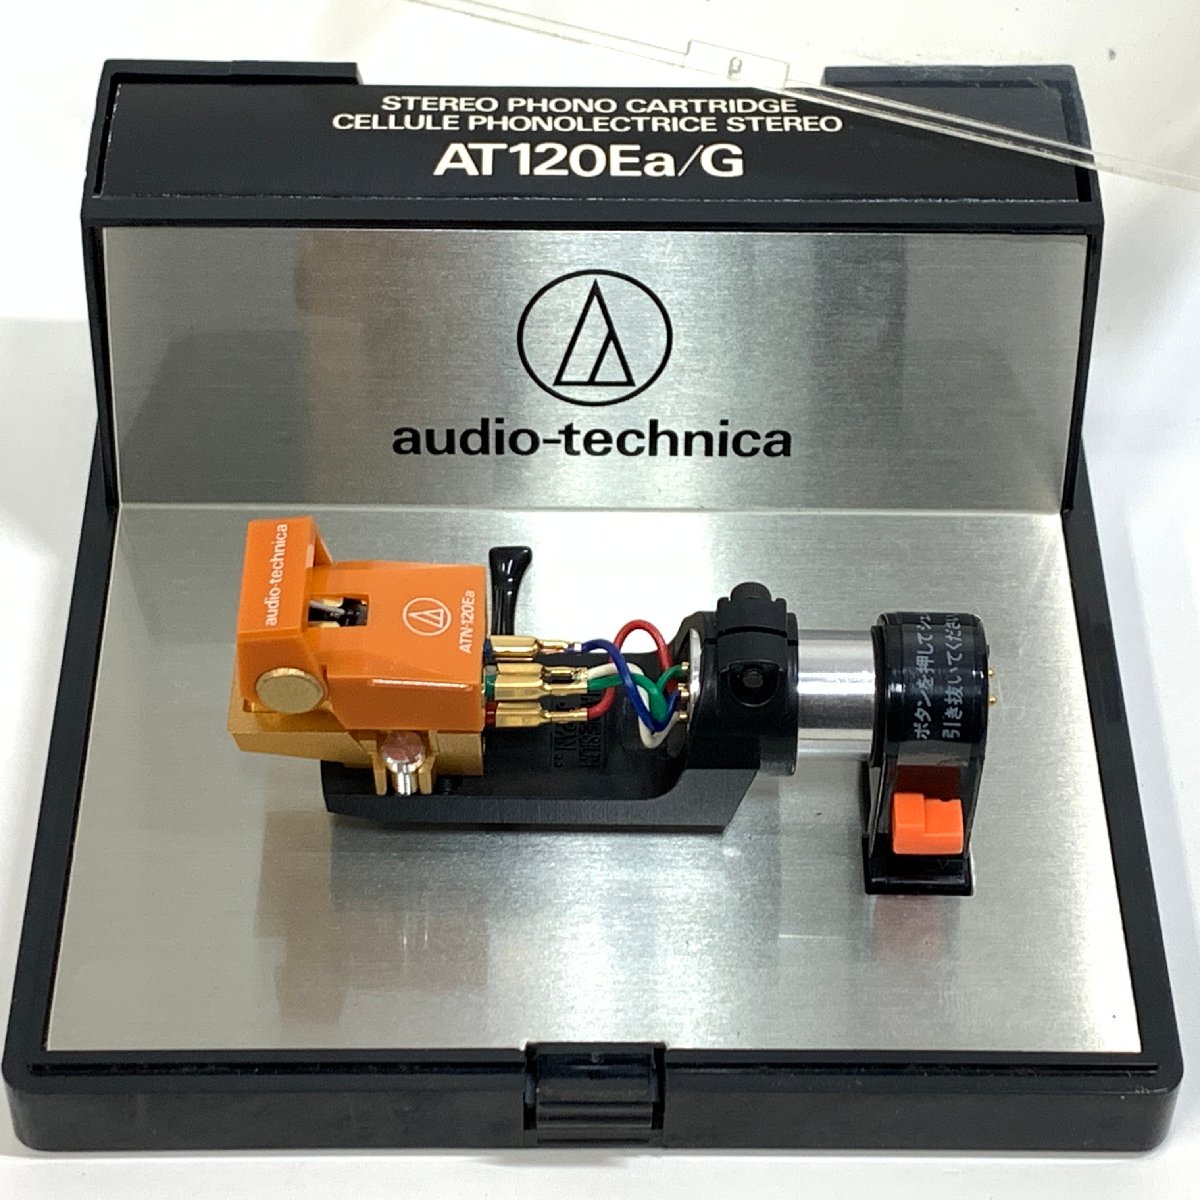 audio-technica AT120Ea/G